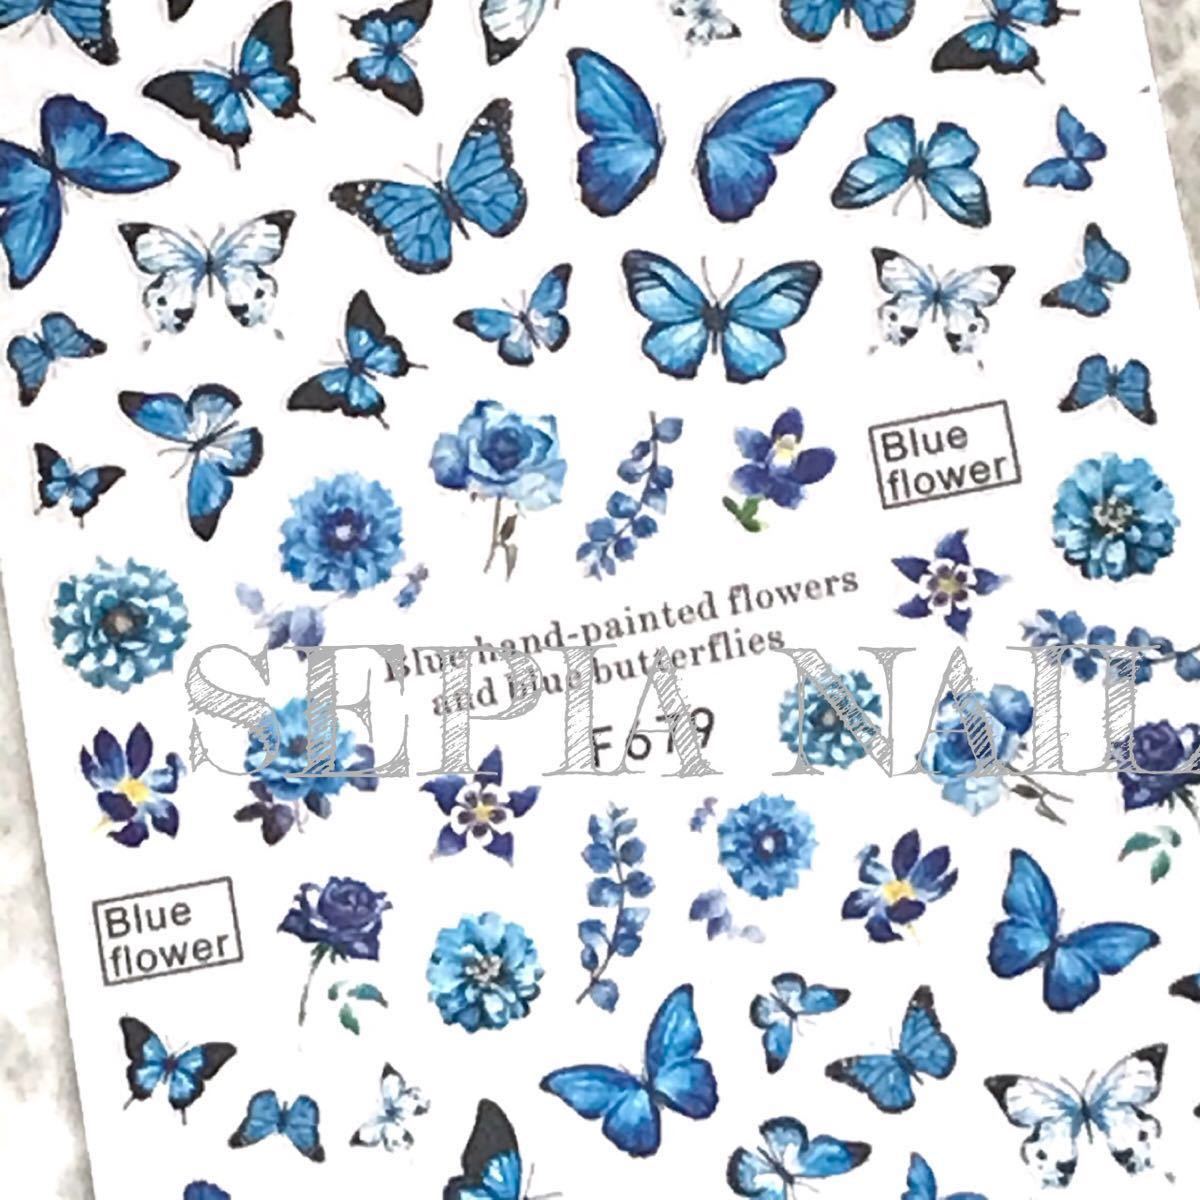 ネイル シール ステッカー バタフライ フラワー ブルー系【F679】蝶々 1632